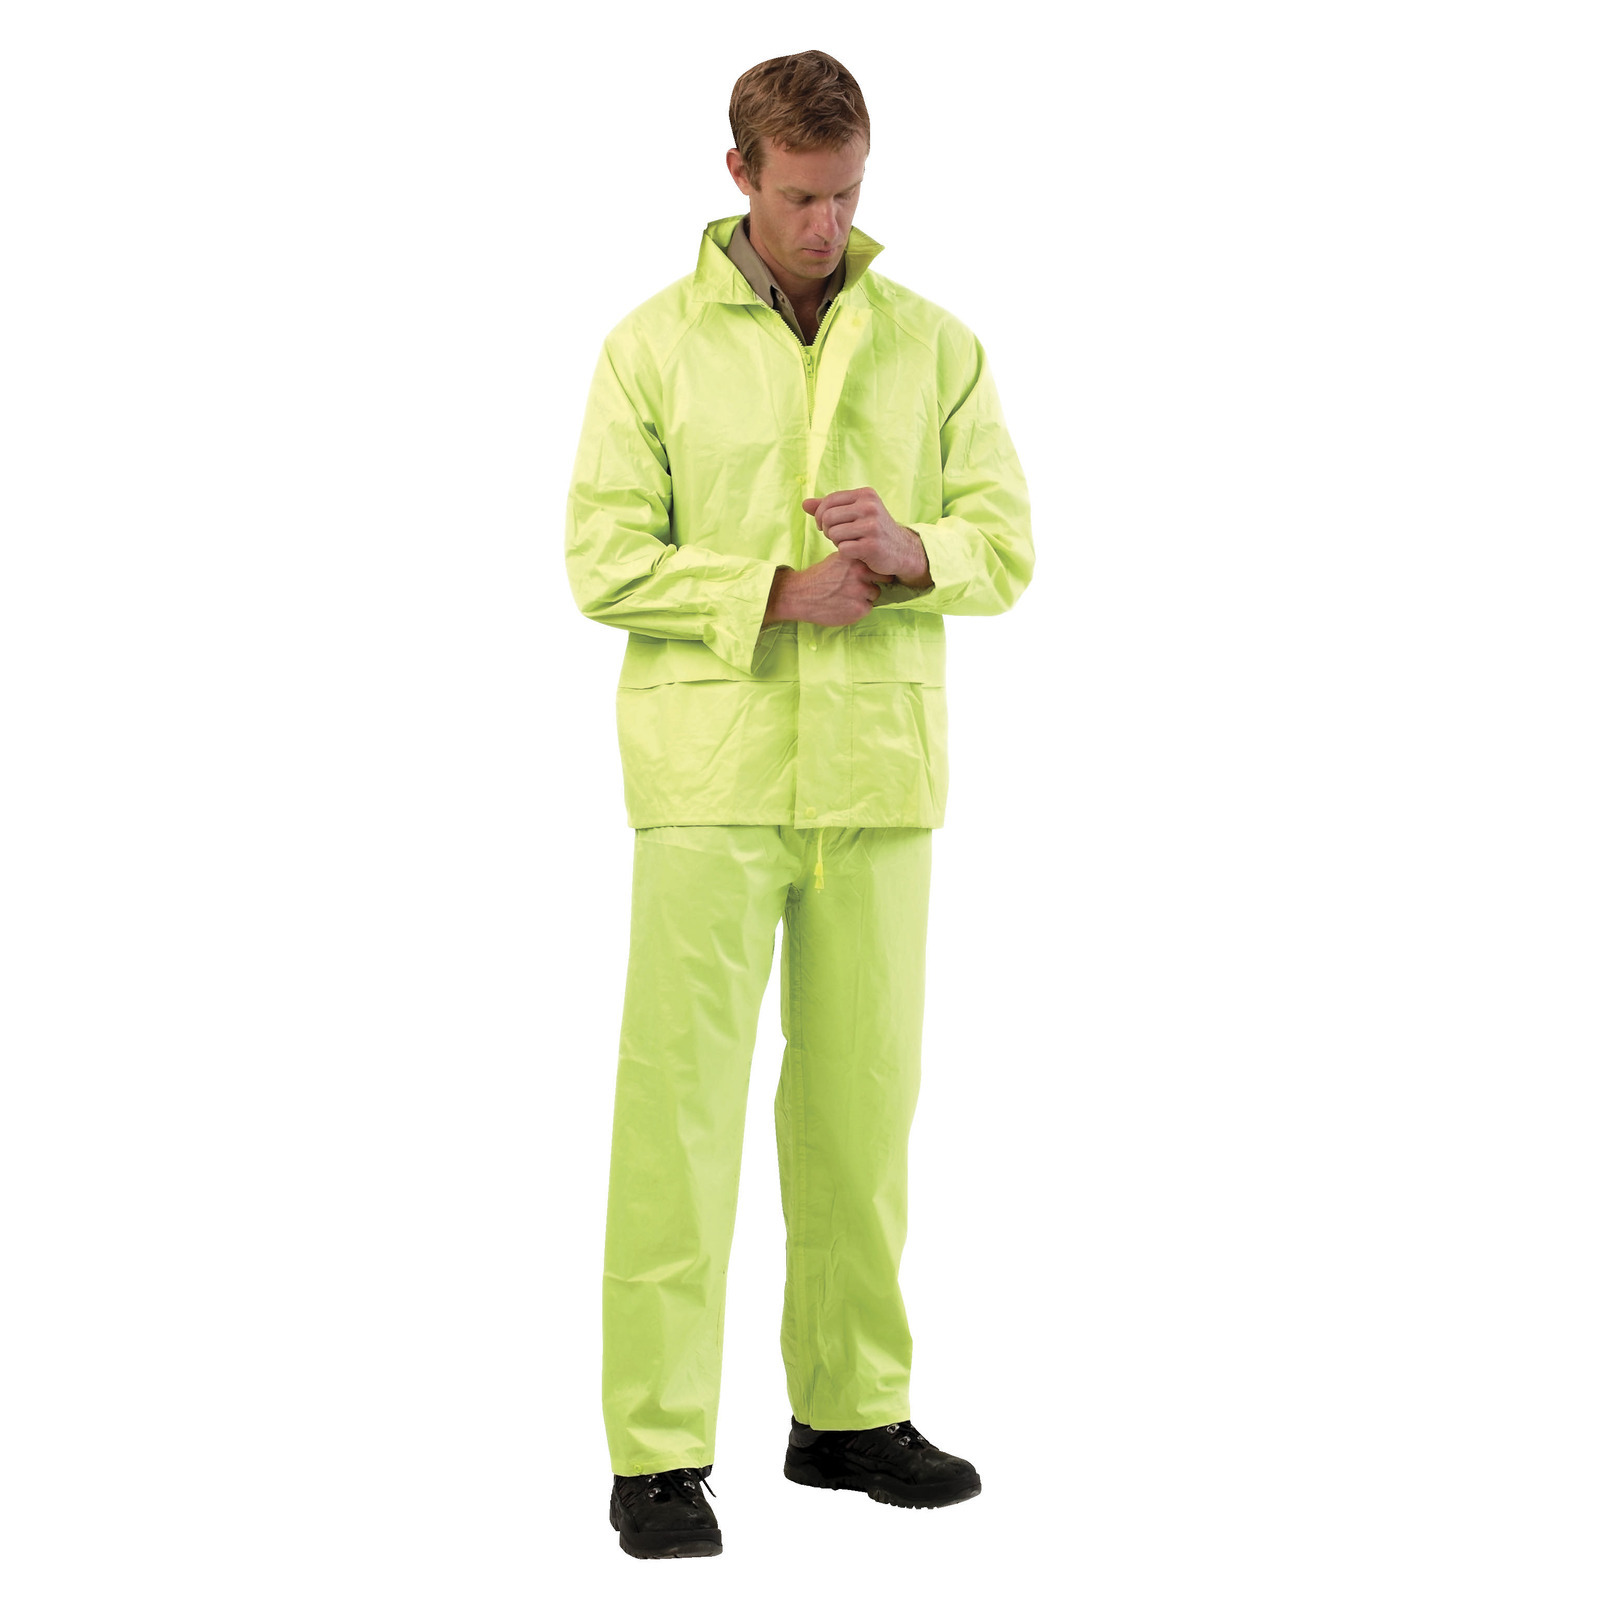 Rain Coat with Pants - Medium